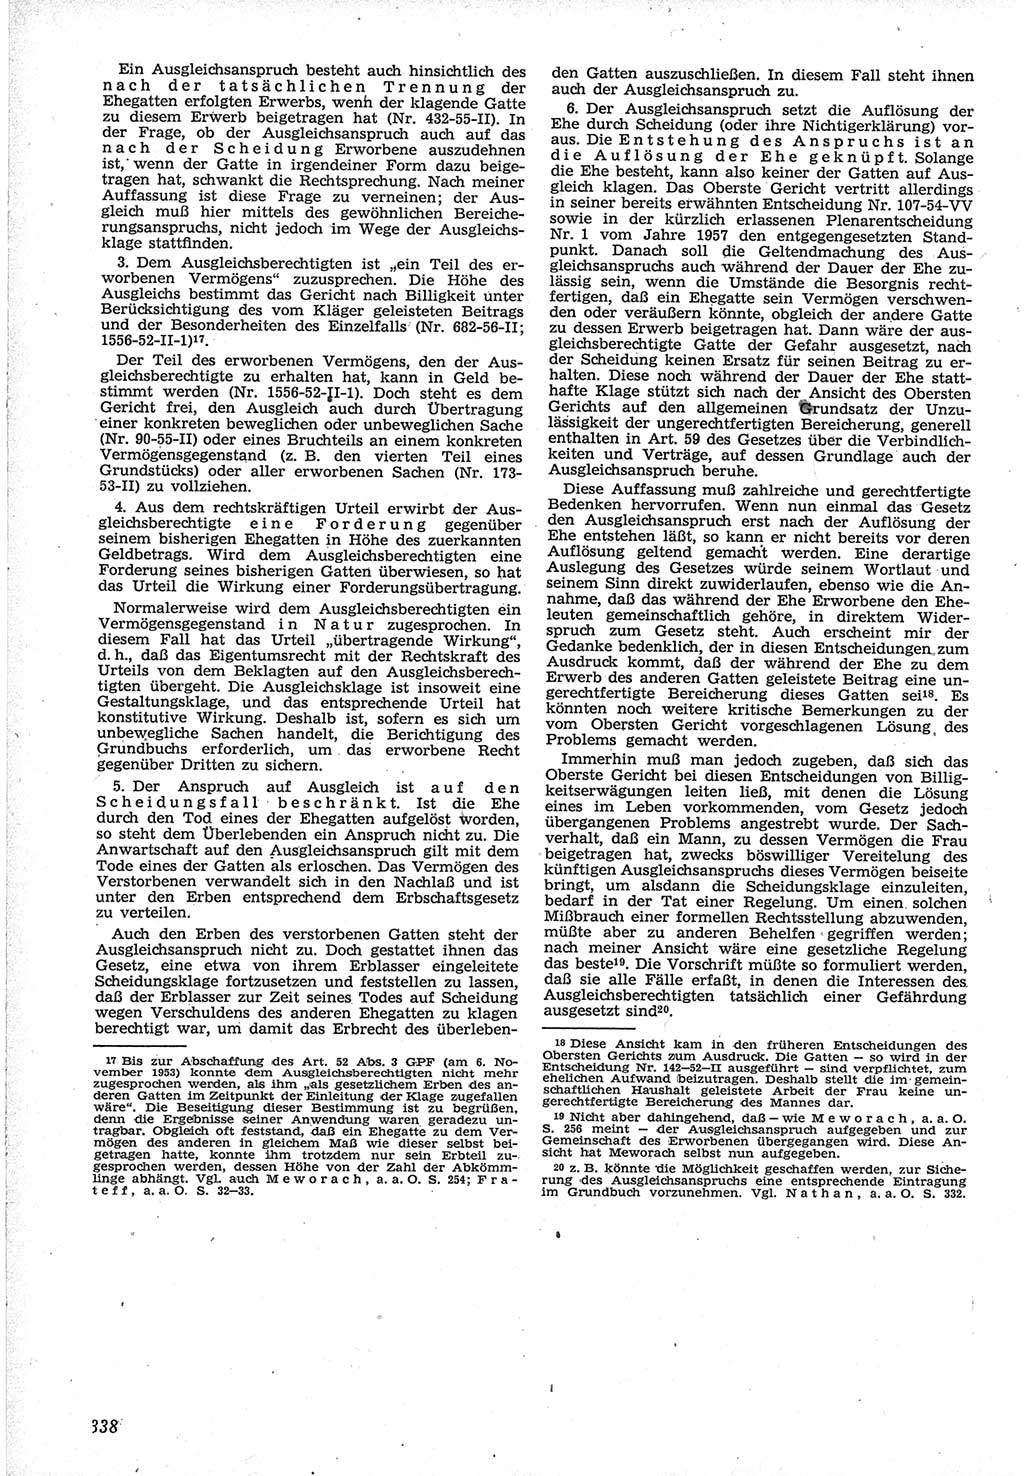 Neue Justiz (NJ), Zeitschrift für Recht und Rechtswissenschaft [Deutsche Demokratische Republik (DDR)], 12. Jahrgang 1958, Seite 338 (NJ DDR 1958, S. 338)